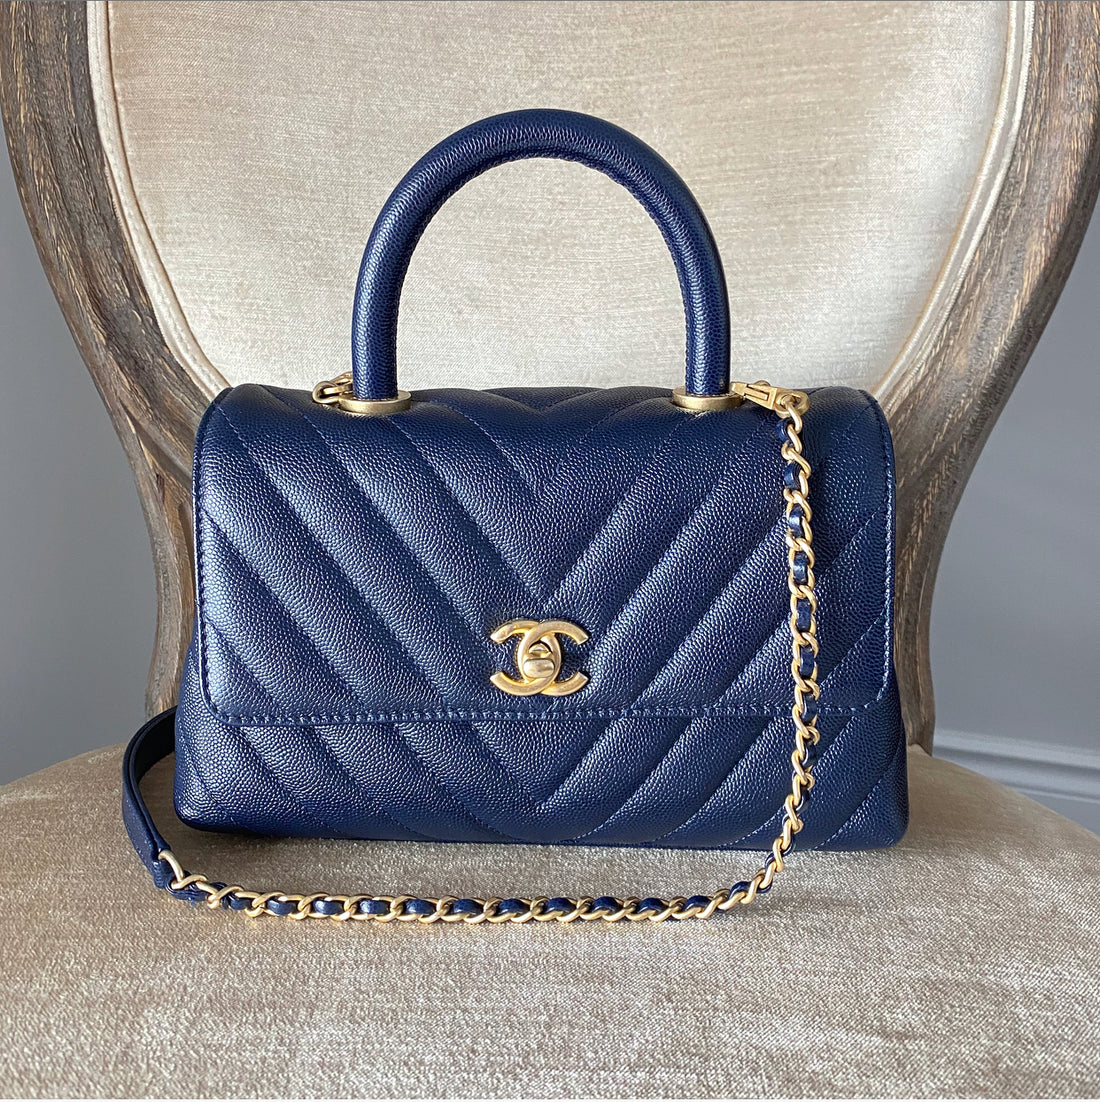 Chanel Blue Small Chevron Coco Handle Bag